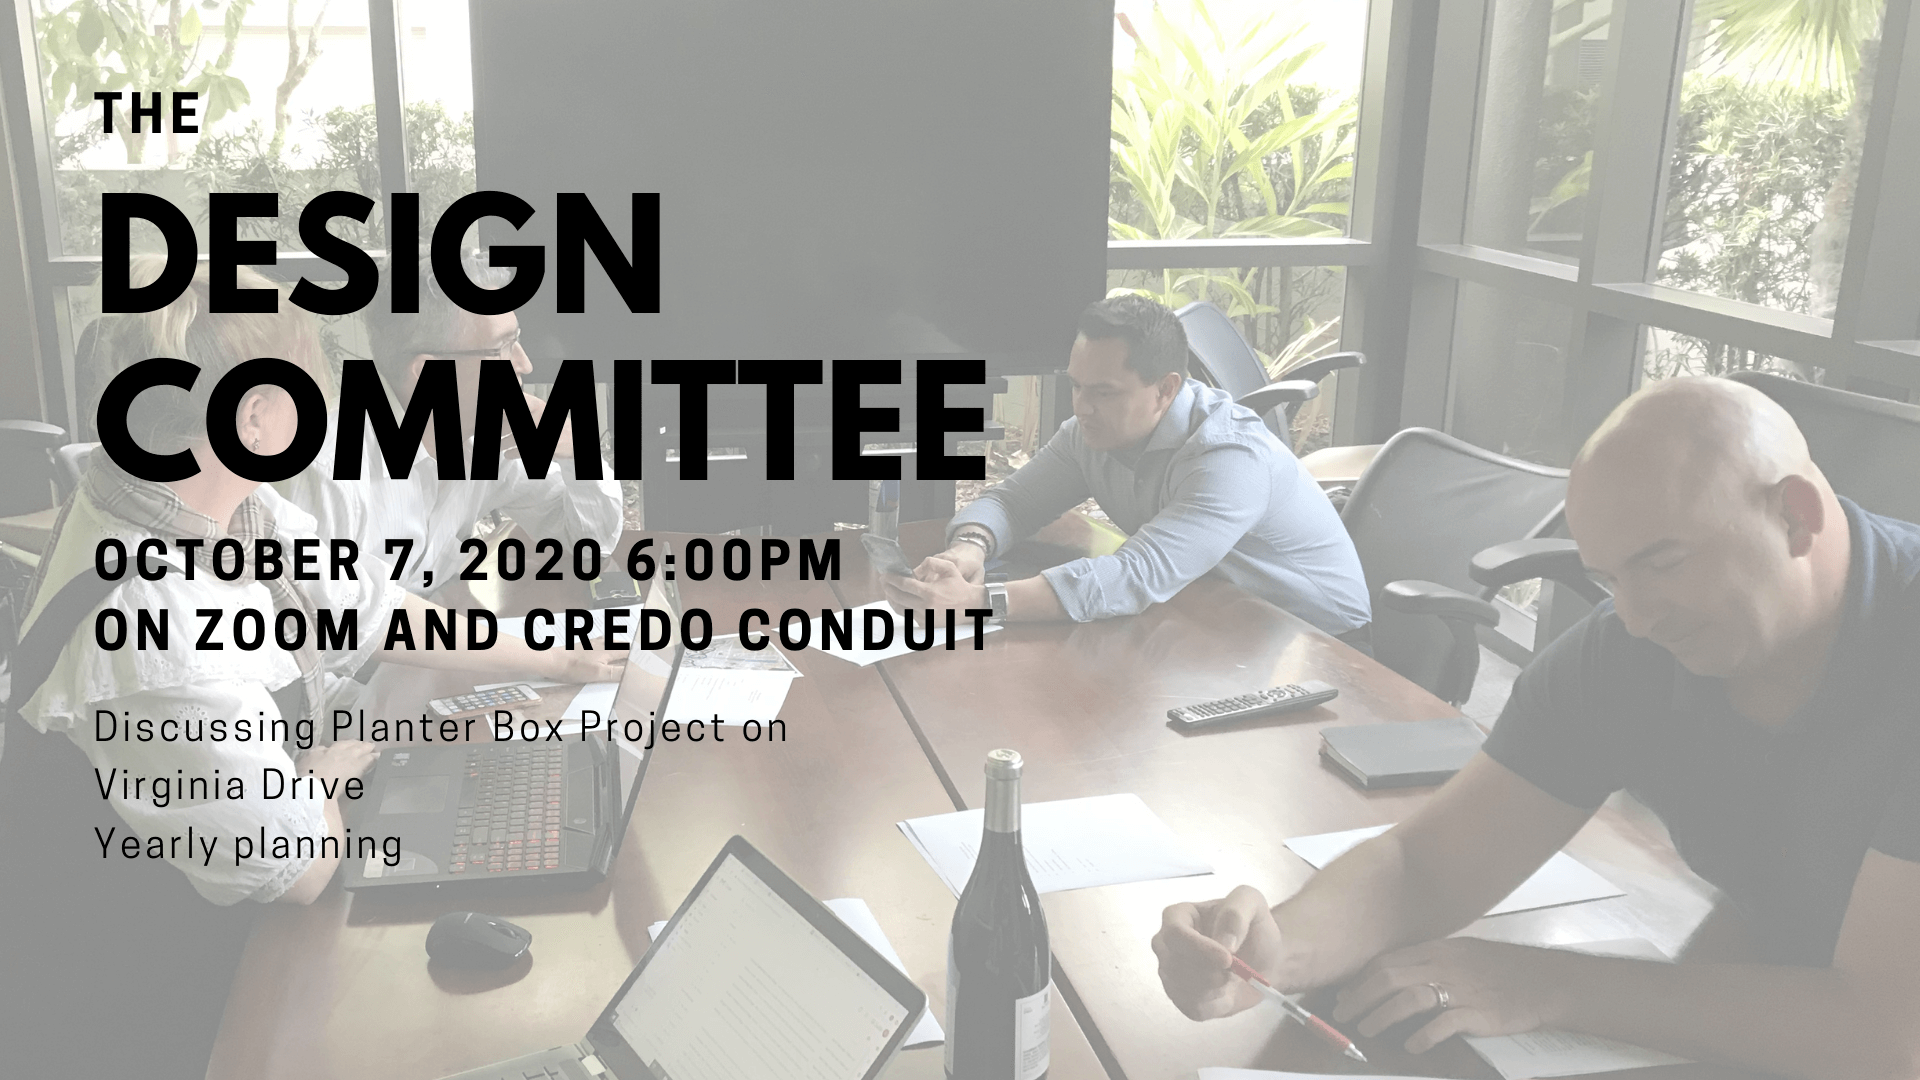 Design Committee